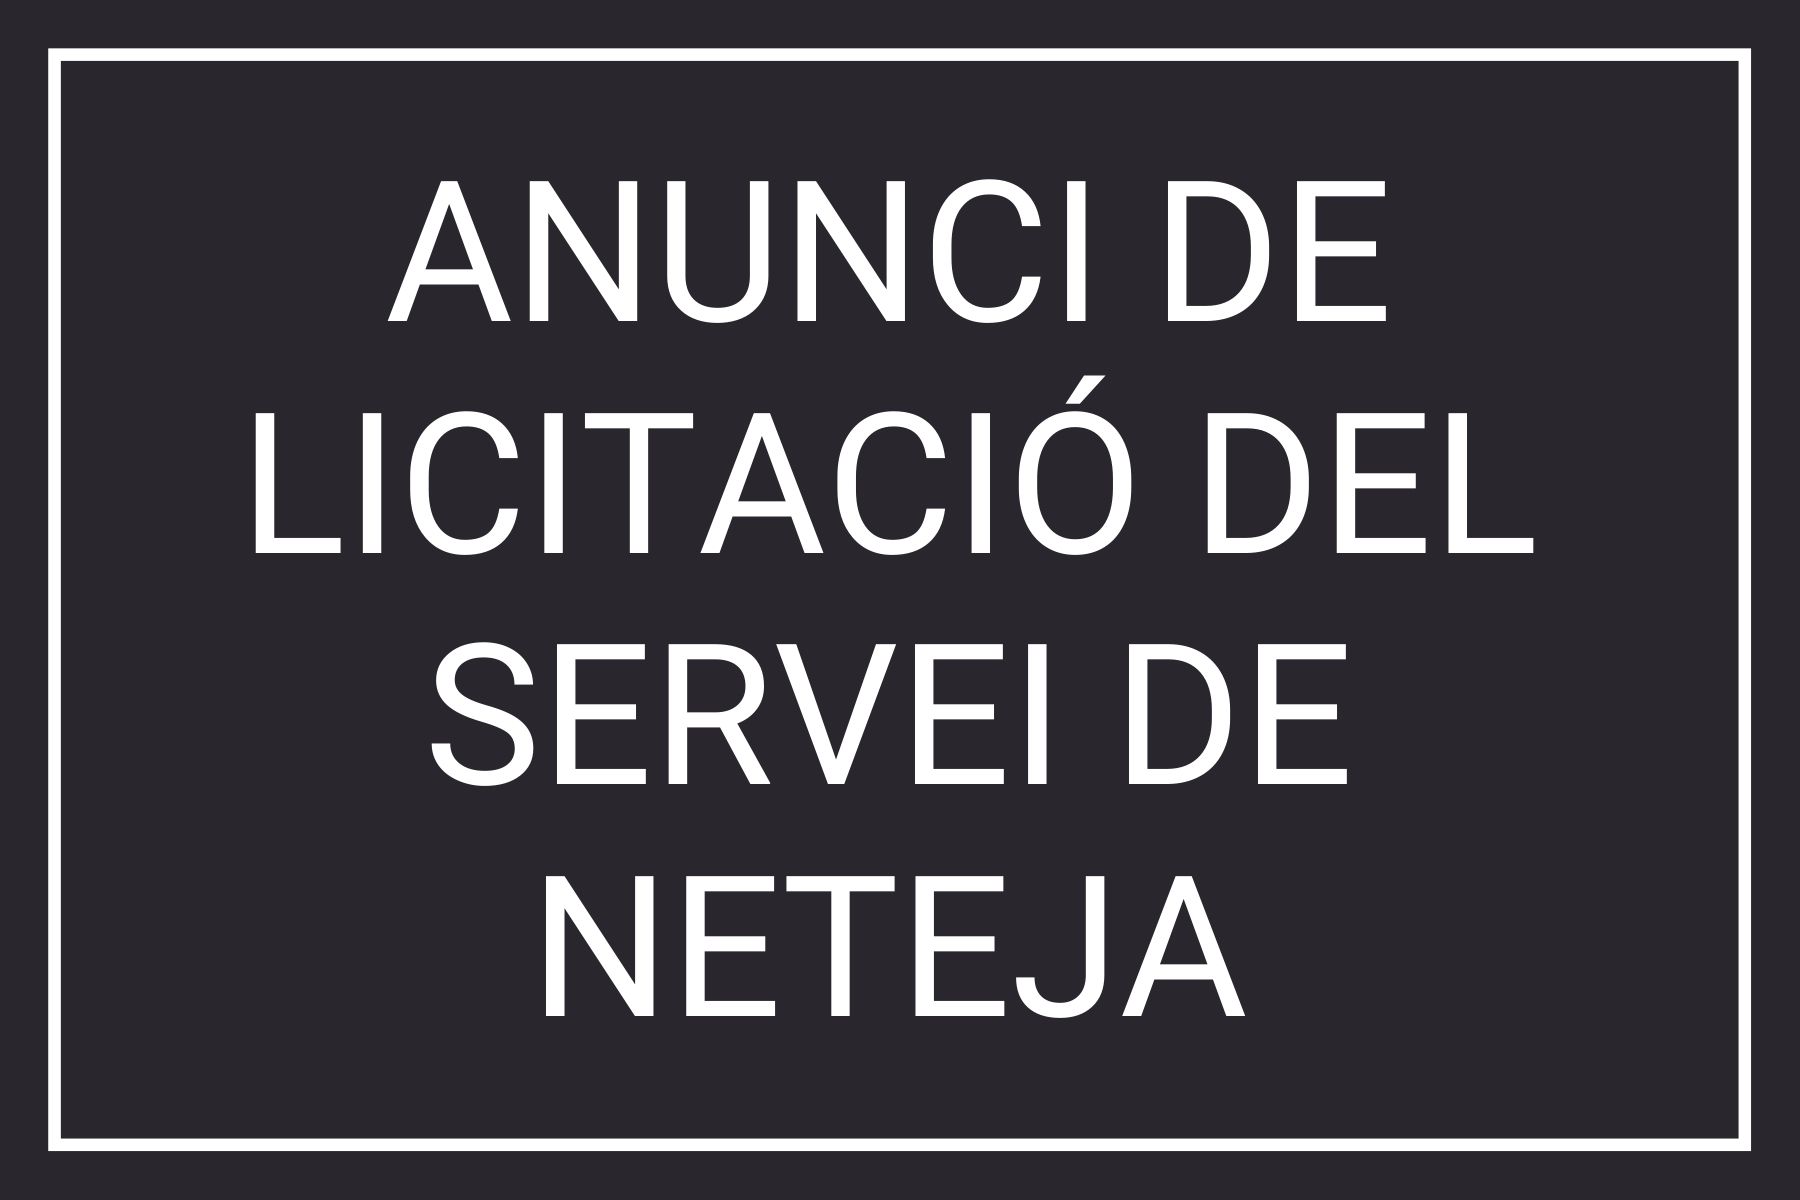 ANUNCI-DE-LICITACIÓ-DEL-SERVEI-DE-NETEJA